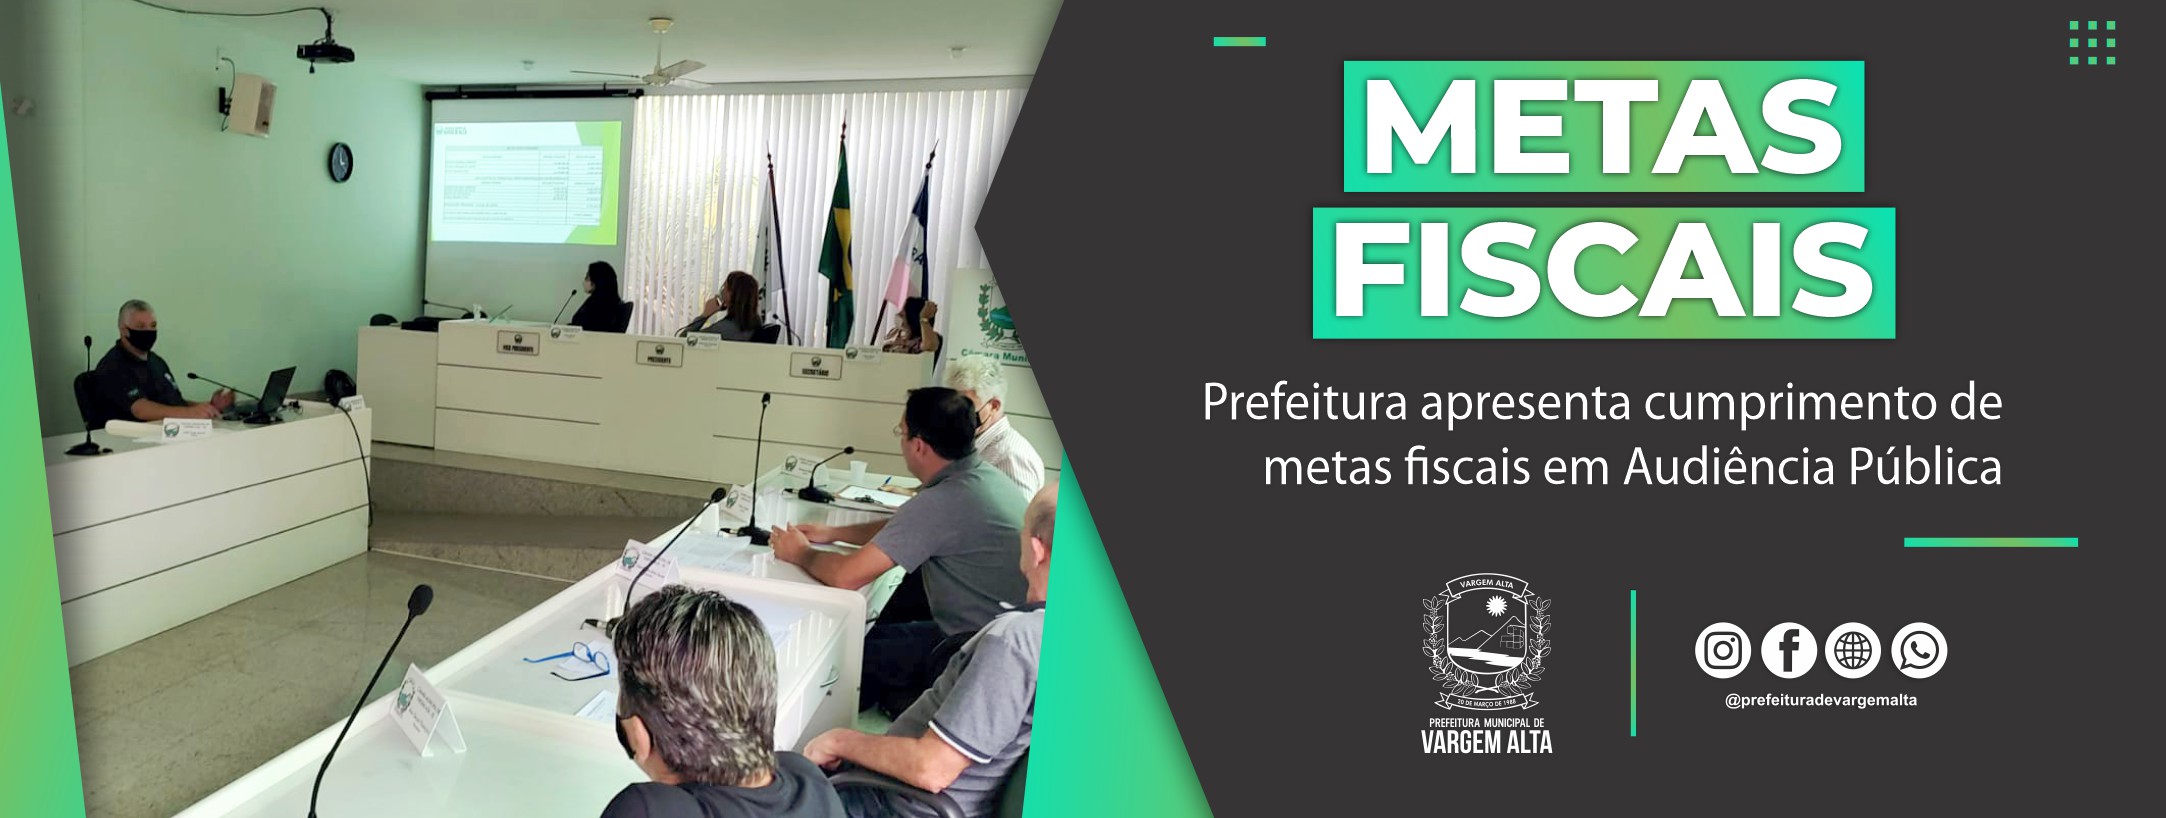 Prefeitura de Vargem Alta apresenta cumprimento de metas fiscais em Audiência Pública